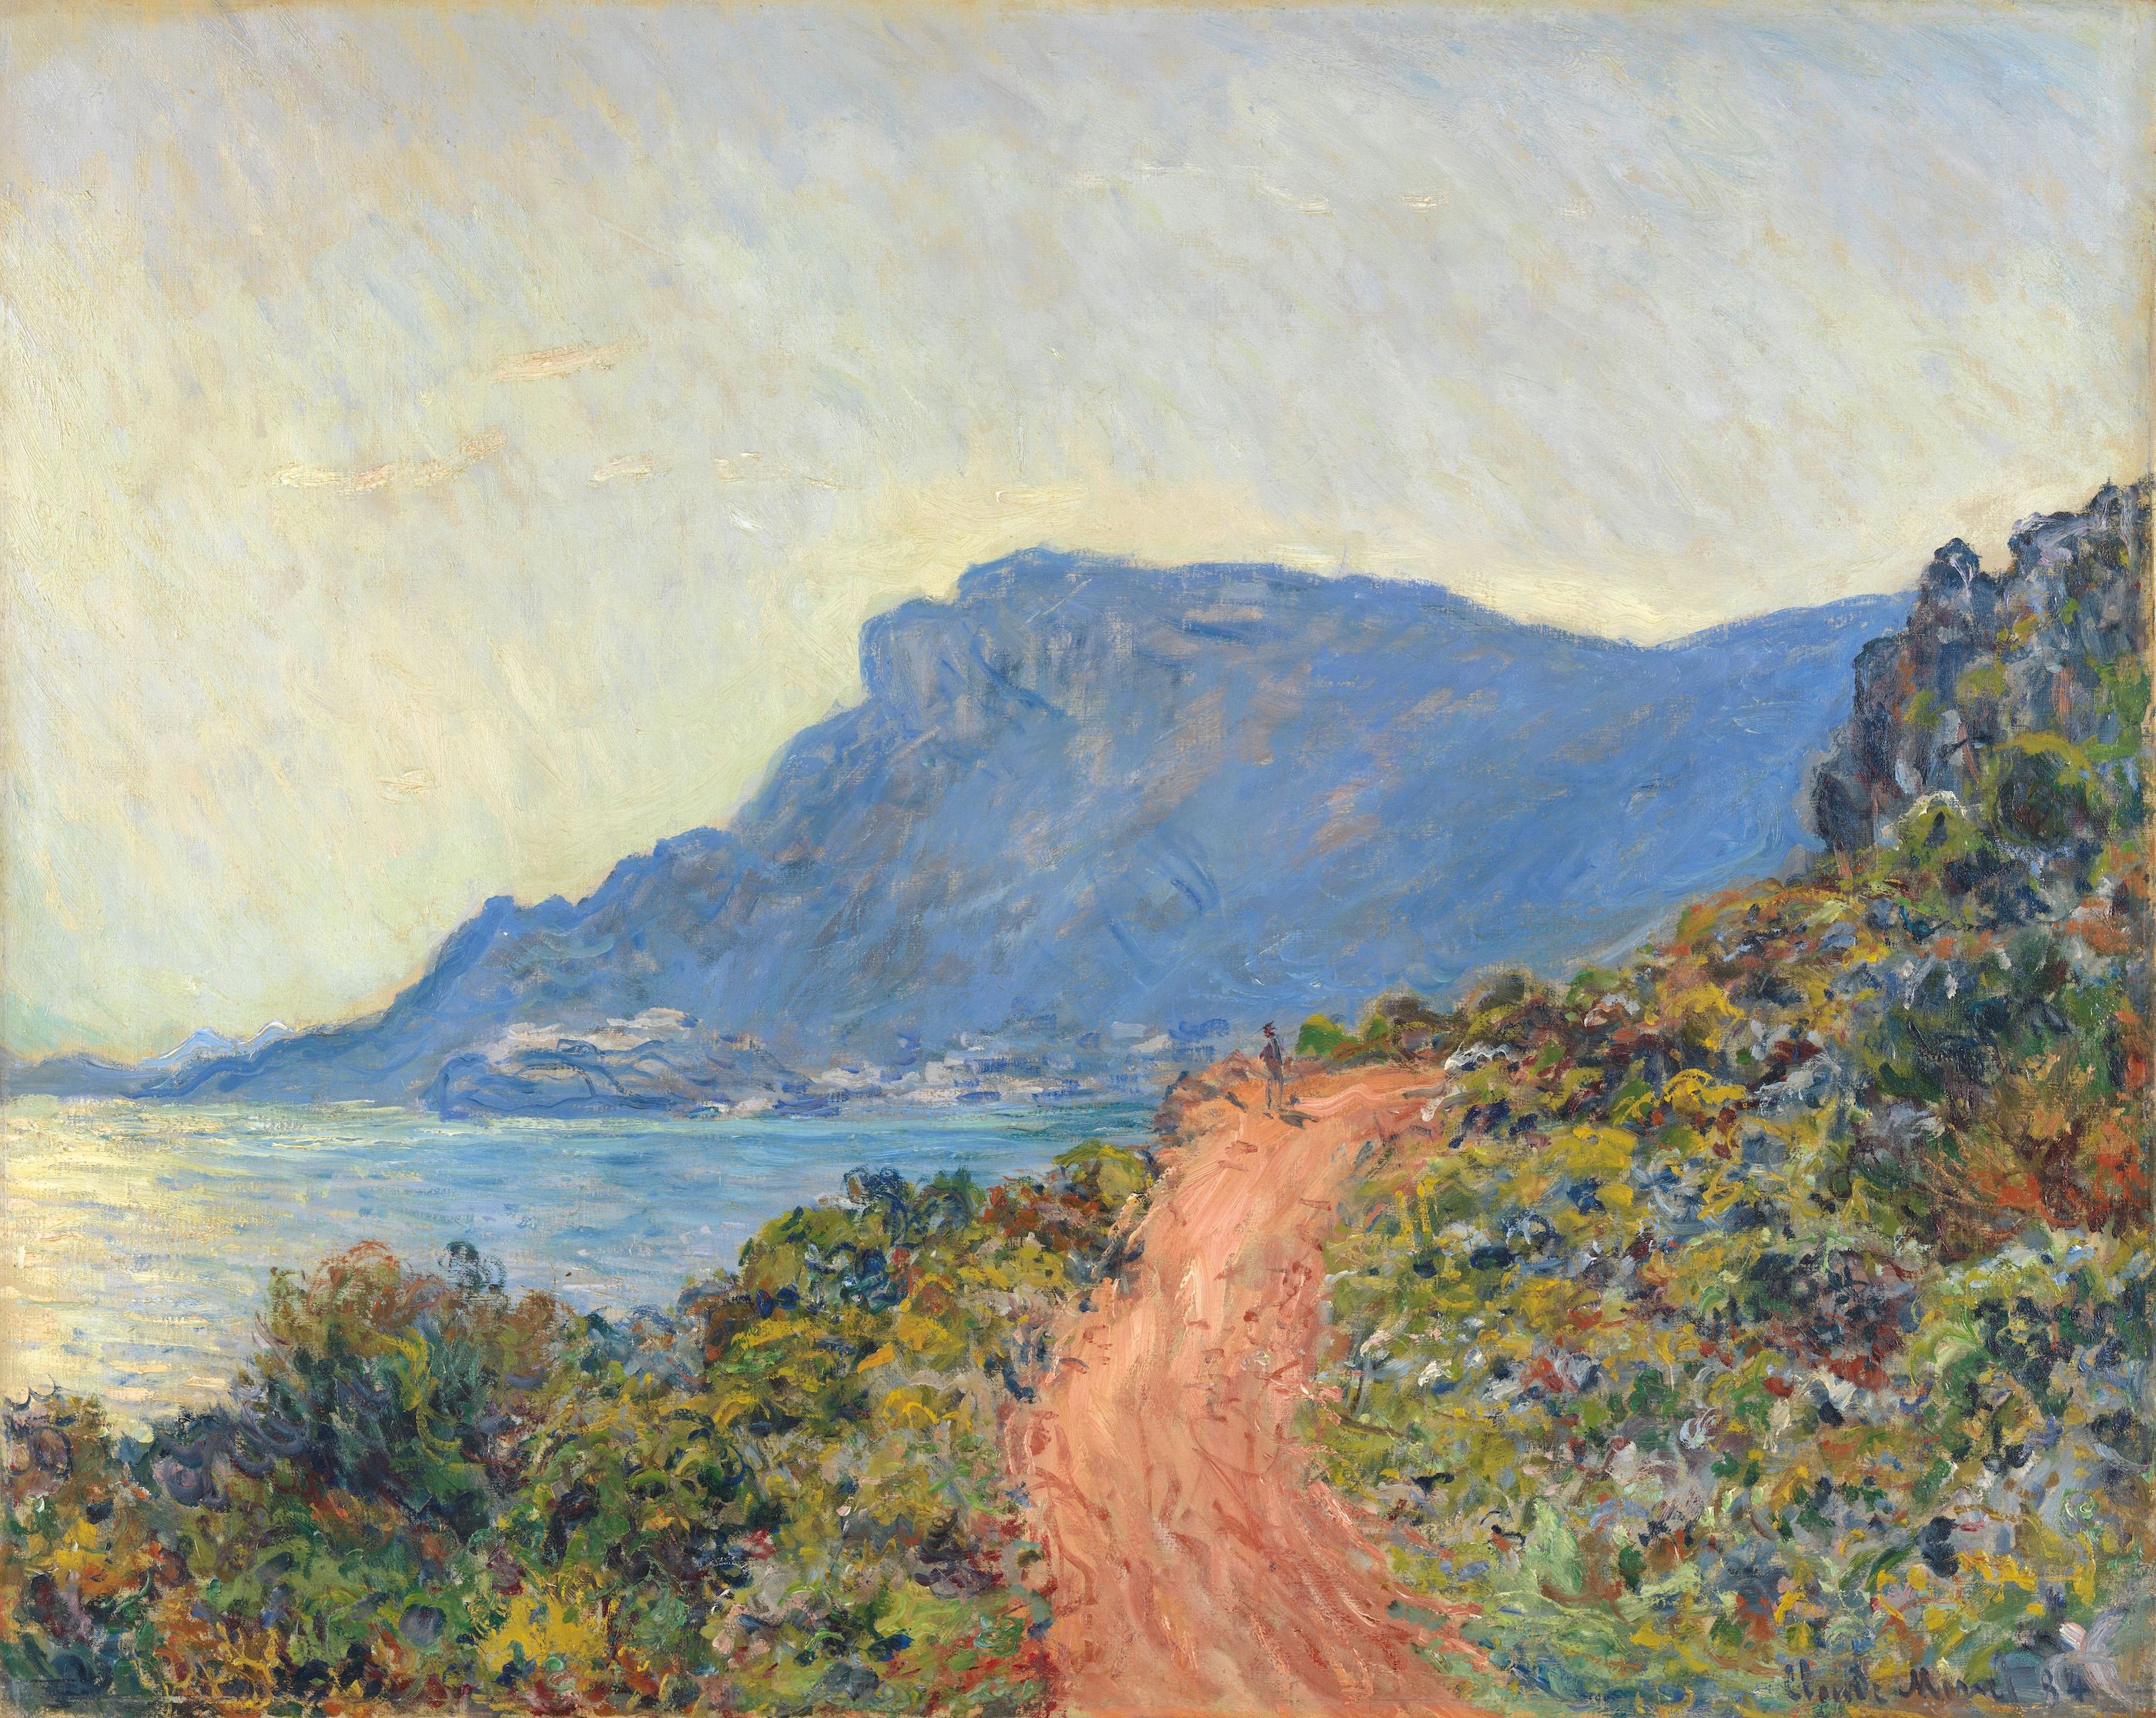 La Corniche near Monaco by Claude Monet - 1884 - 75 × 94 cm Rijksmuseum